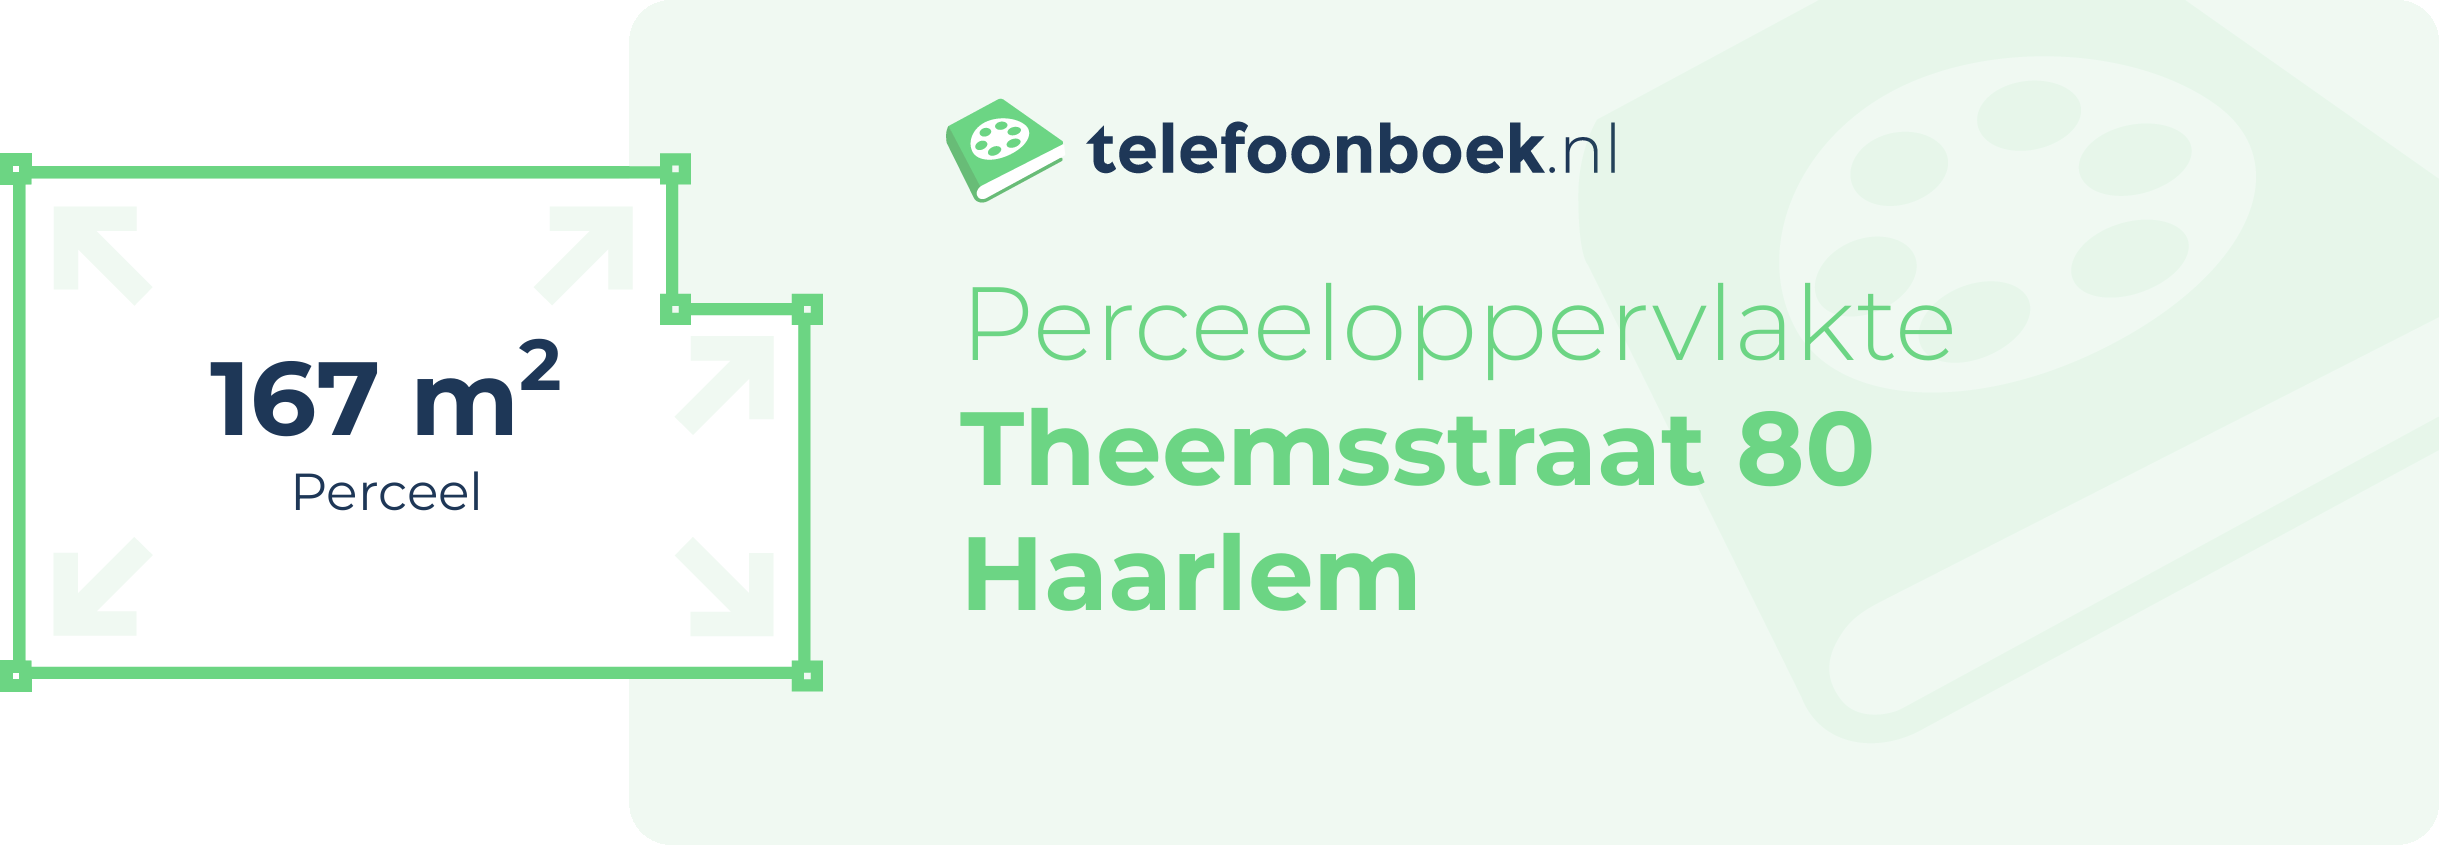 Perceeloppervlakte Theemsstraat 80 Haarlem